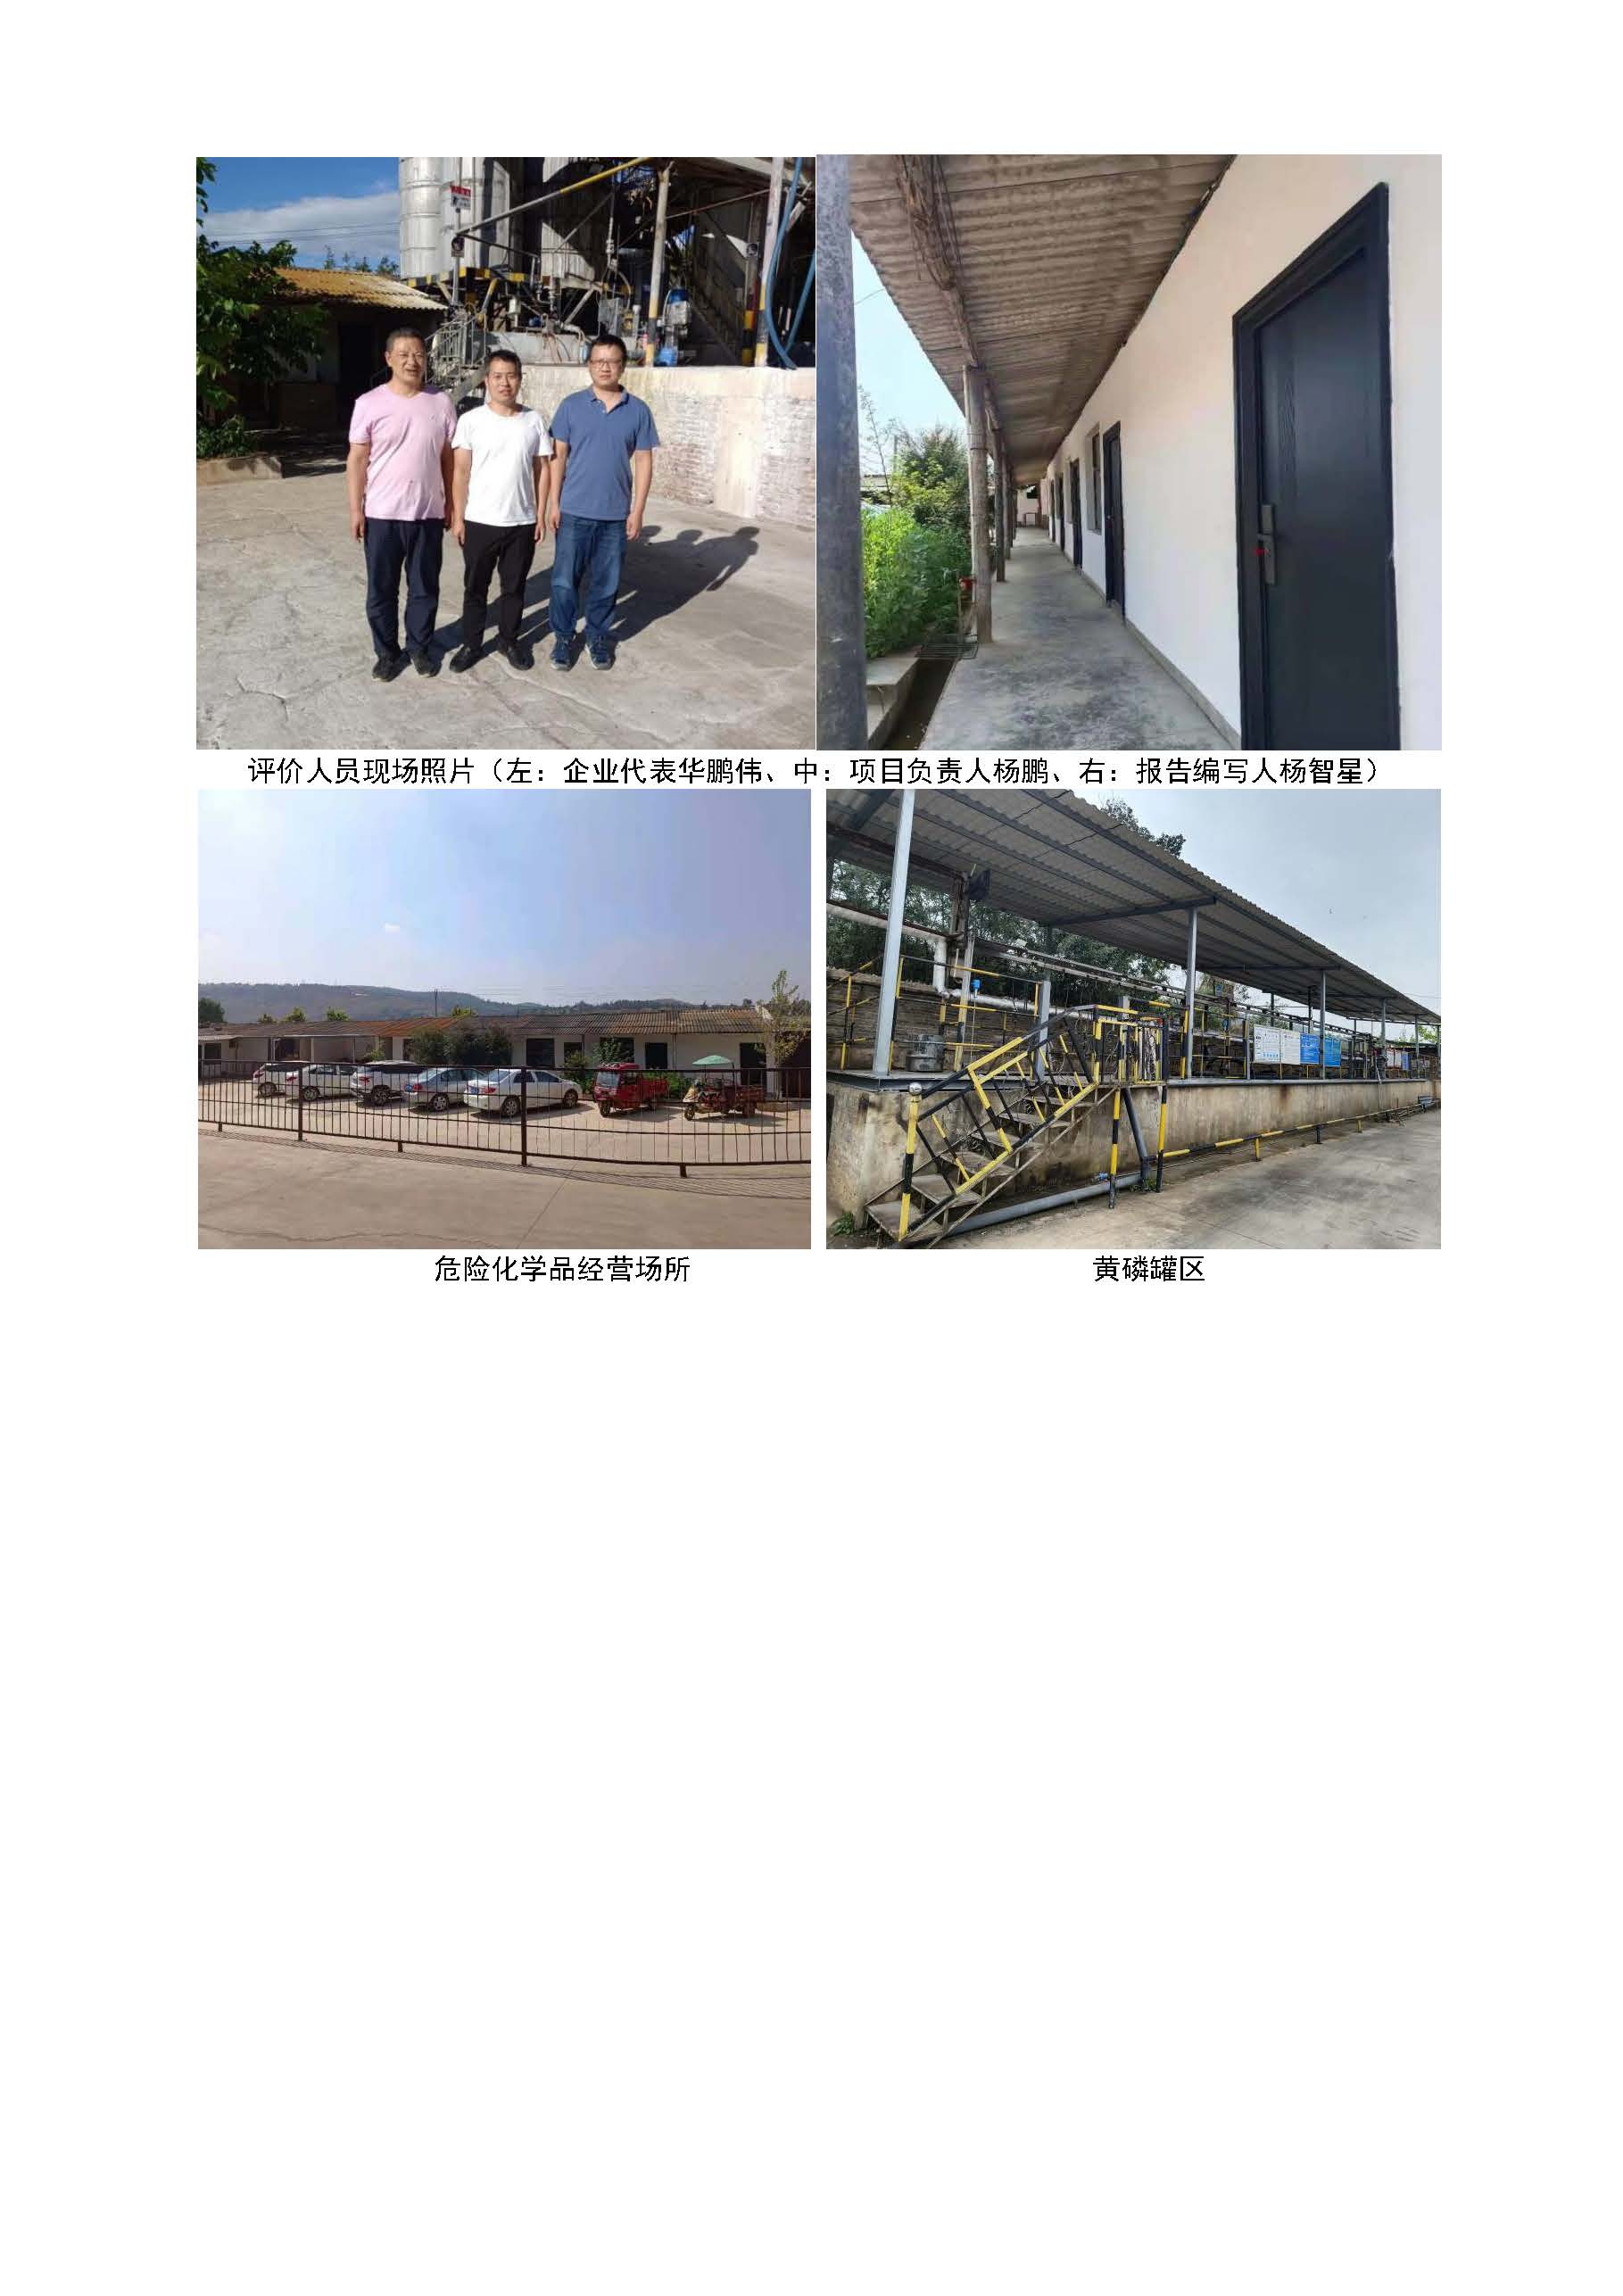 云南瑞鑫化工有限公司磷酸生产装置安全现状评价报告基本信息公开表